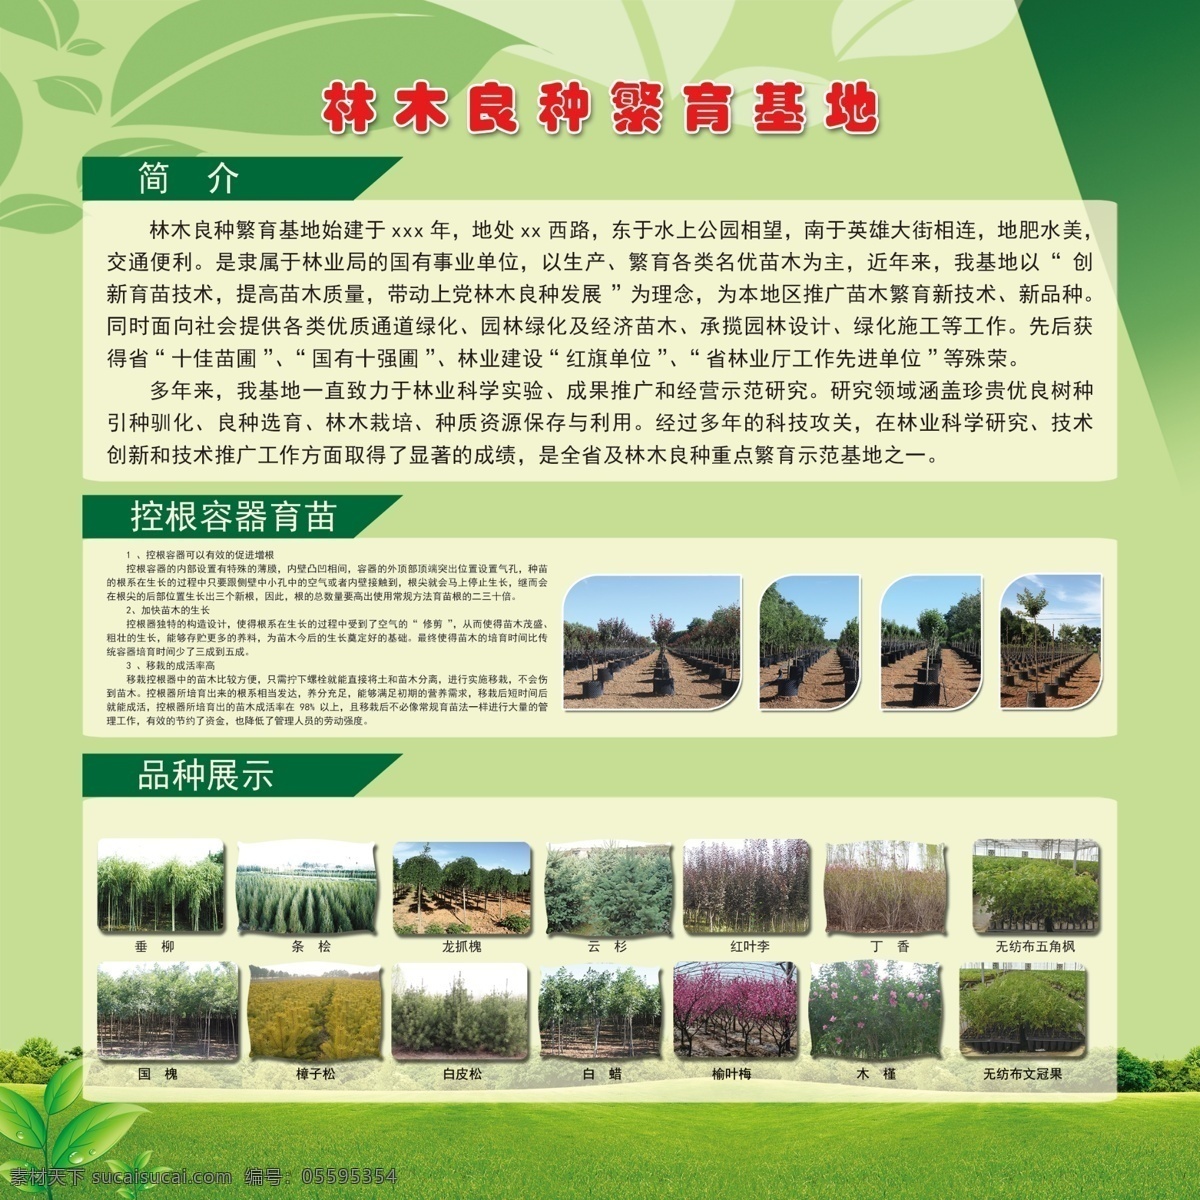 林木 良种繁育 基地 基地简介 绿色版面 版面 展板 控根容器育苗 树苗品种展示 展板模板